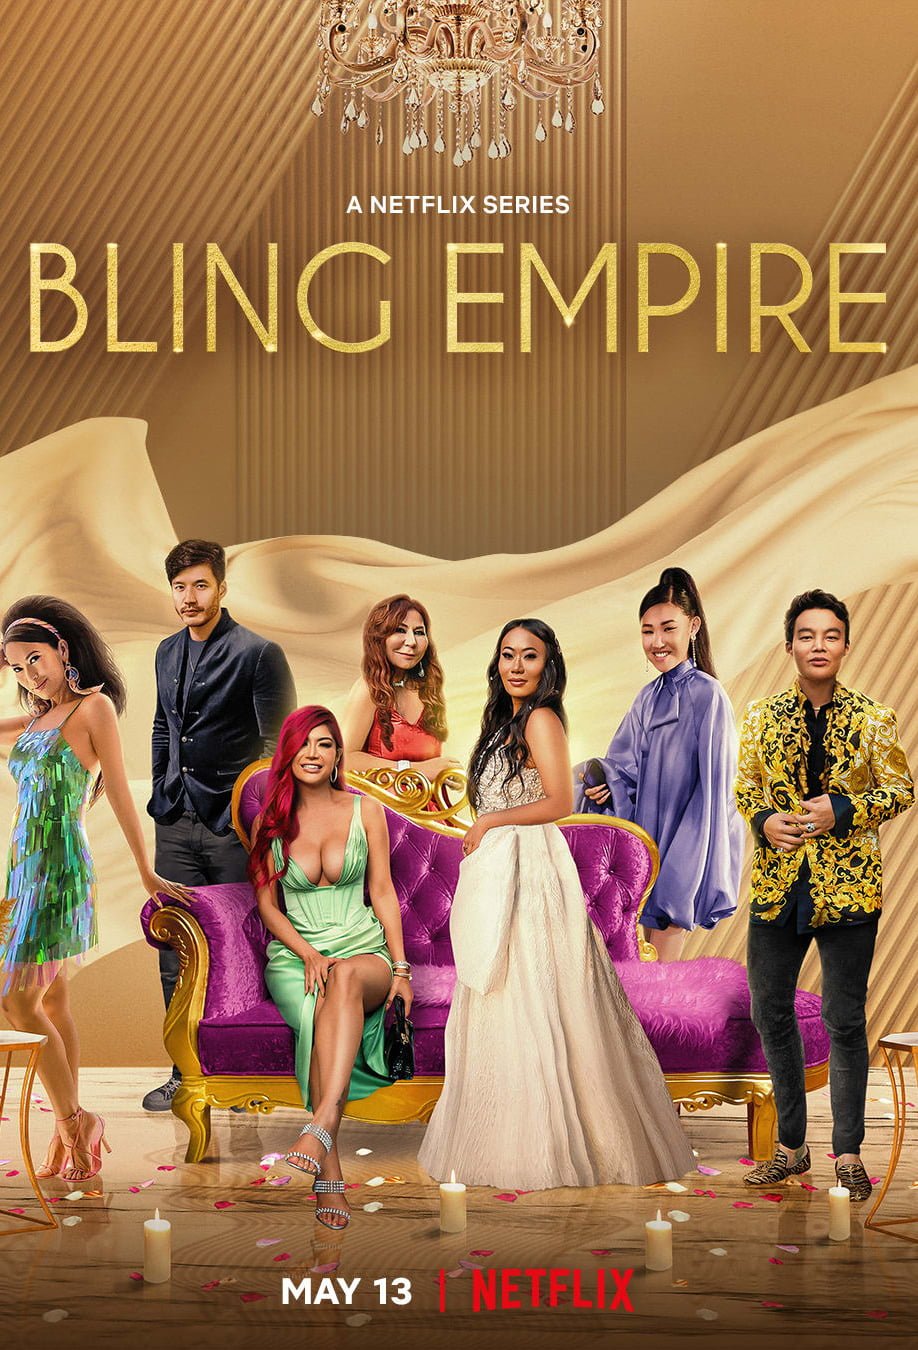 Bling Empire Season 2 Fashion Looks Like Jaime's Alien-Inspired Outfit